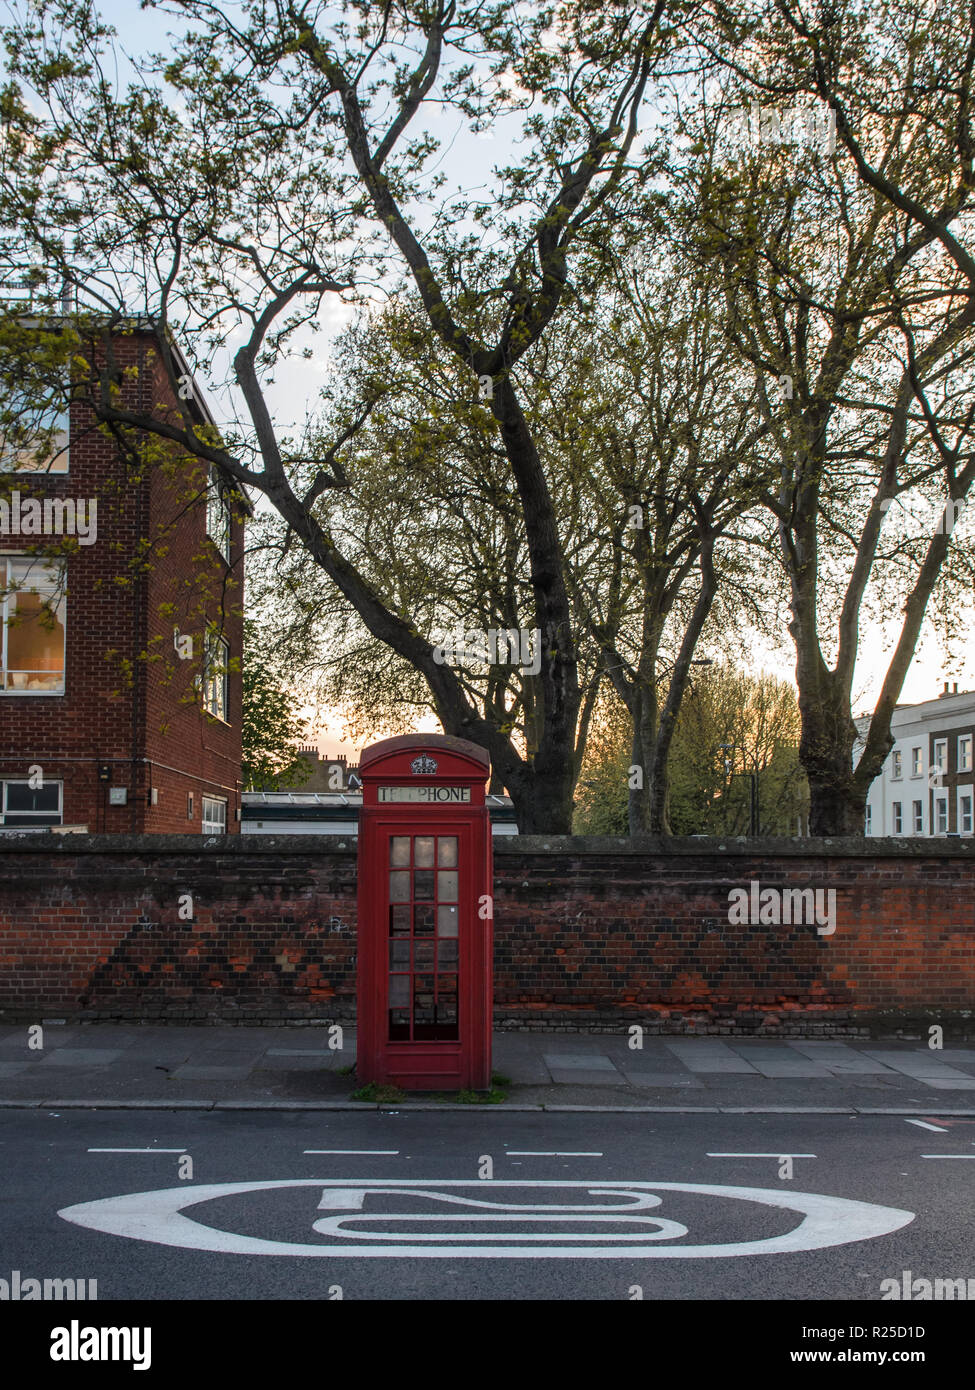 London, England, UK - April 20, 2015: Ein Schild erinnert Autofahrer von einem 20 km/h Höchstgeschwindigkeit ist auf einer Straße im Süden Londons gemalt, neben einem traditionellen r Stockfoto